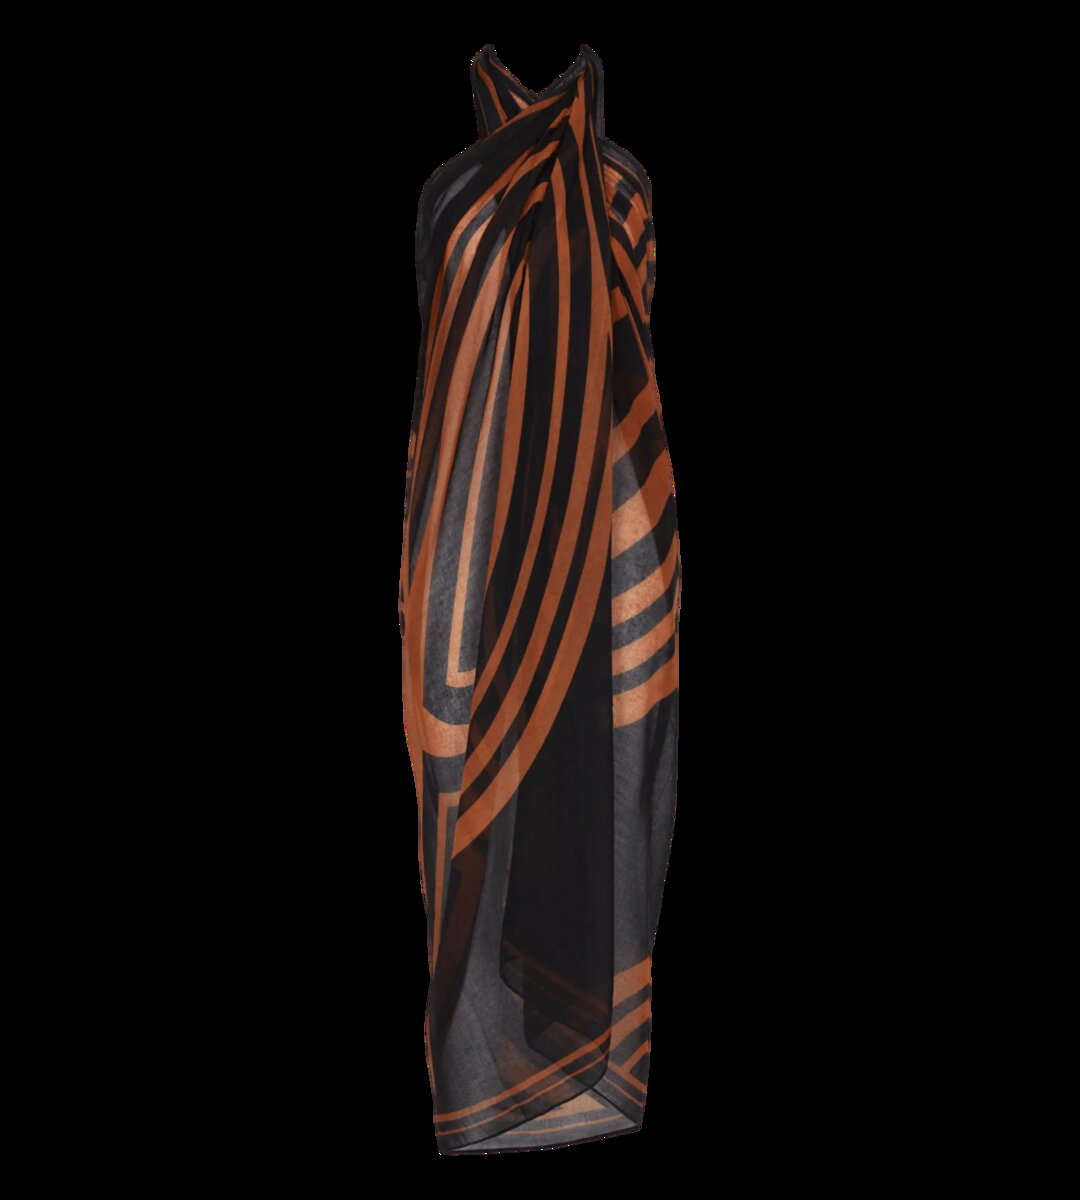 Plážová elegance - Víceúčelová zavinovací sukně Triumph, tmavá kombinace oranžové (M018) 1 i147_36037574